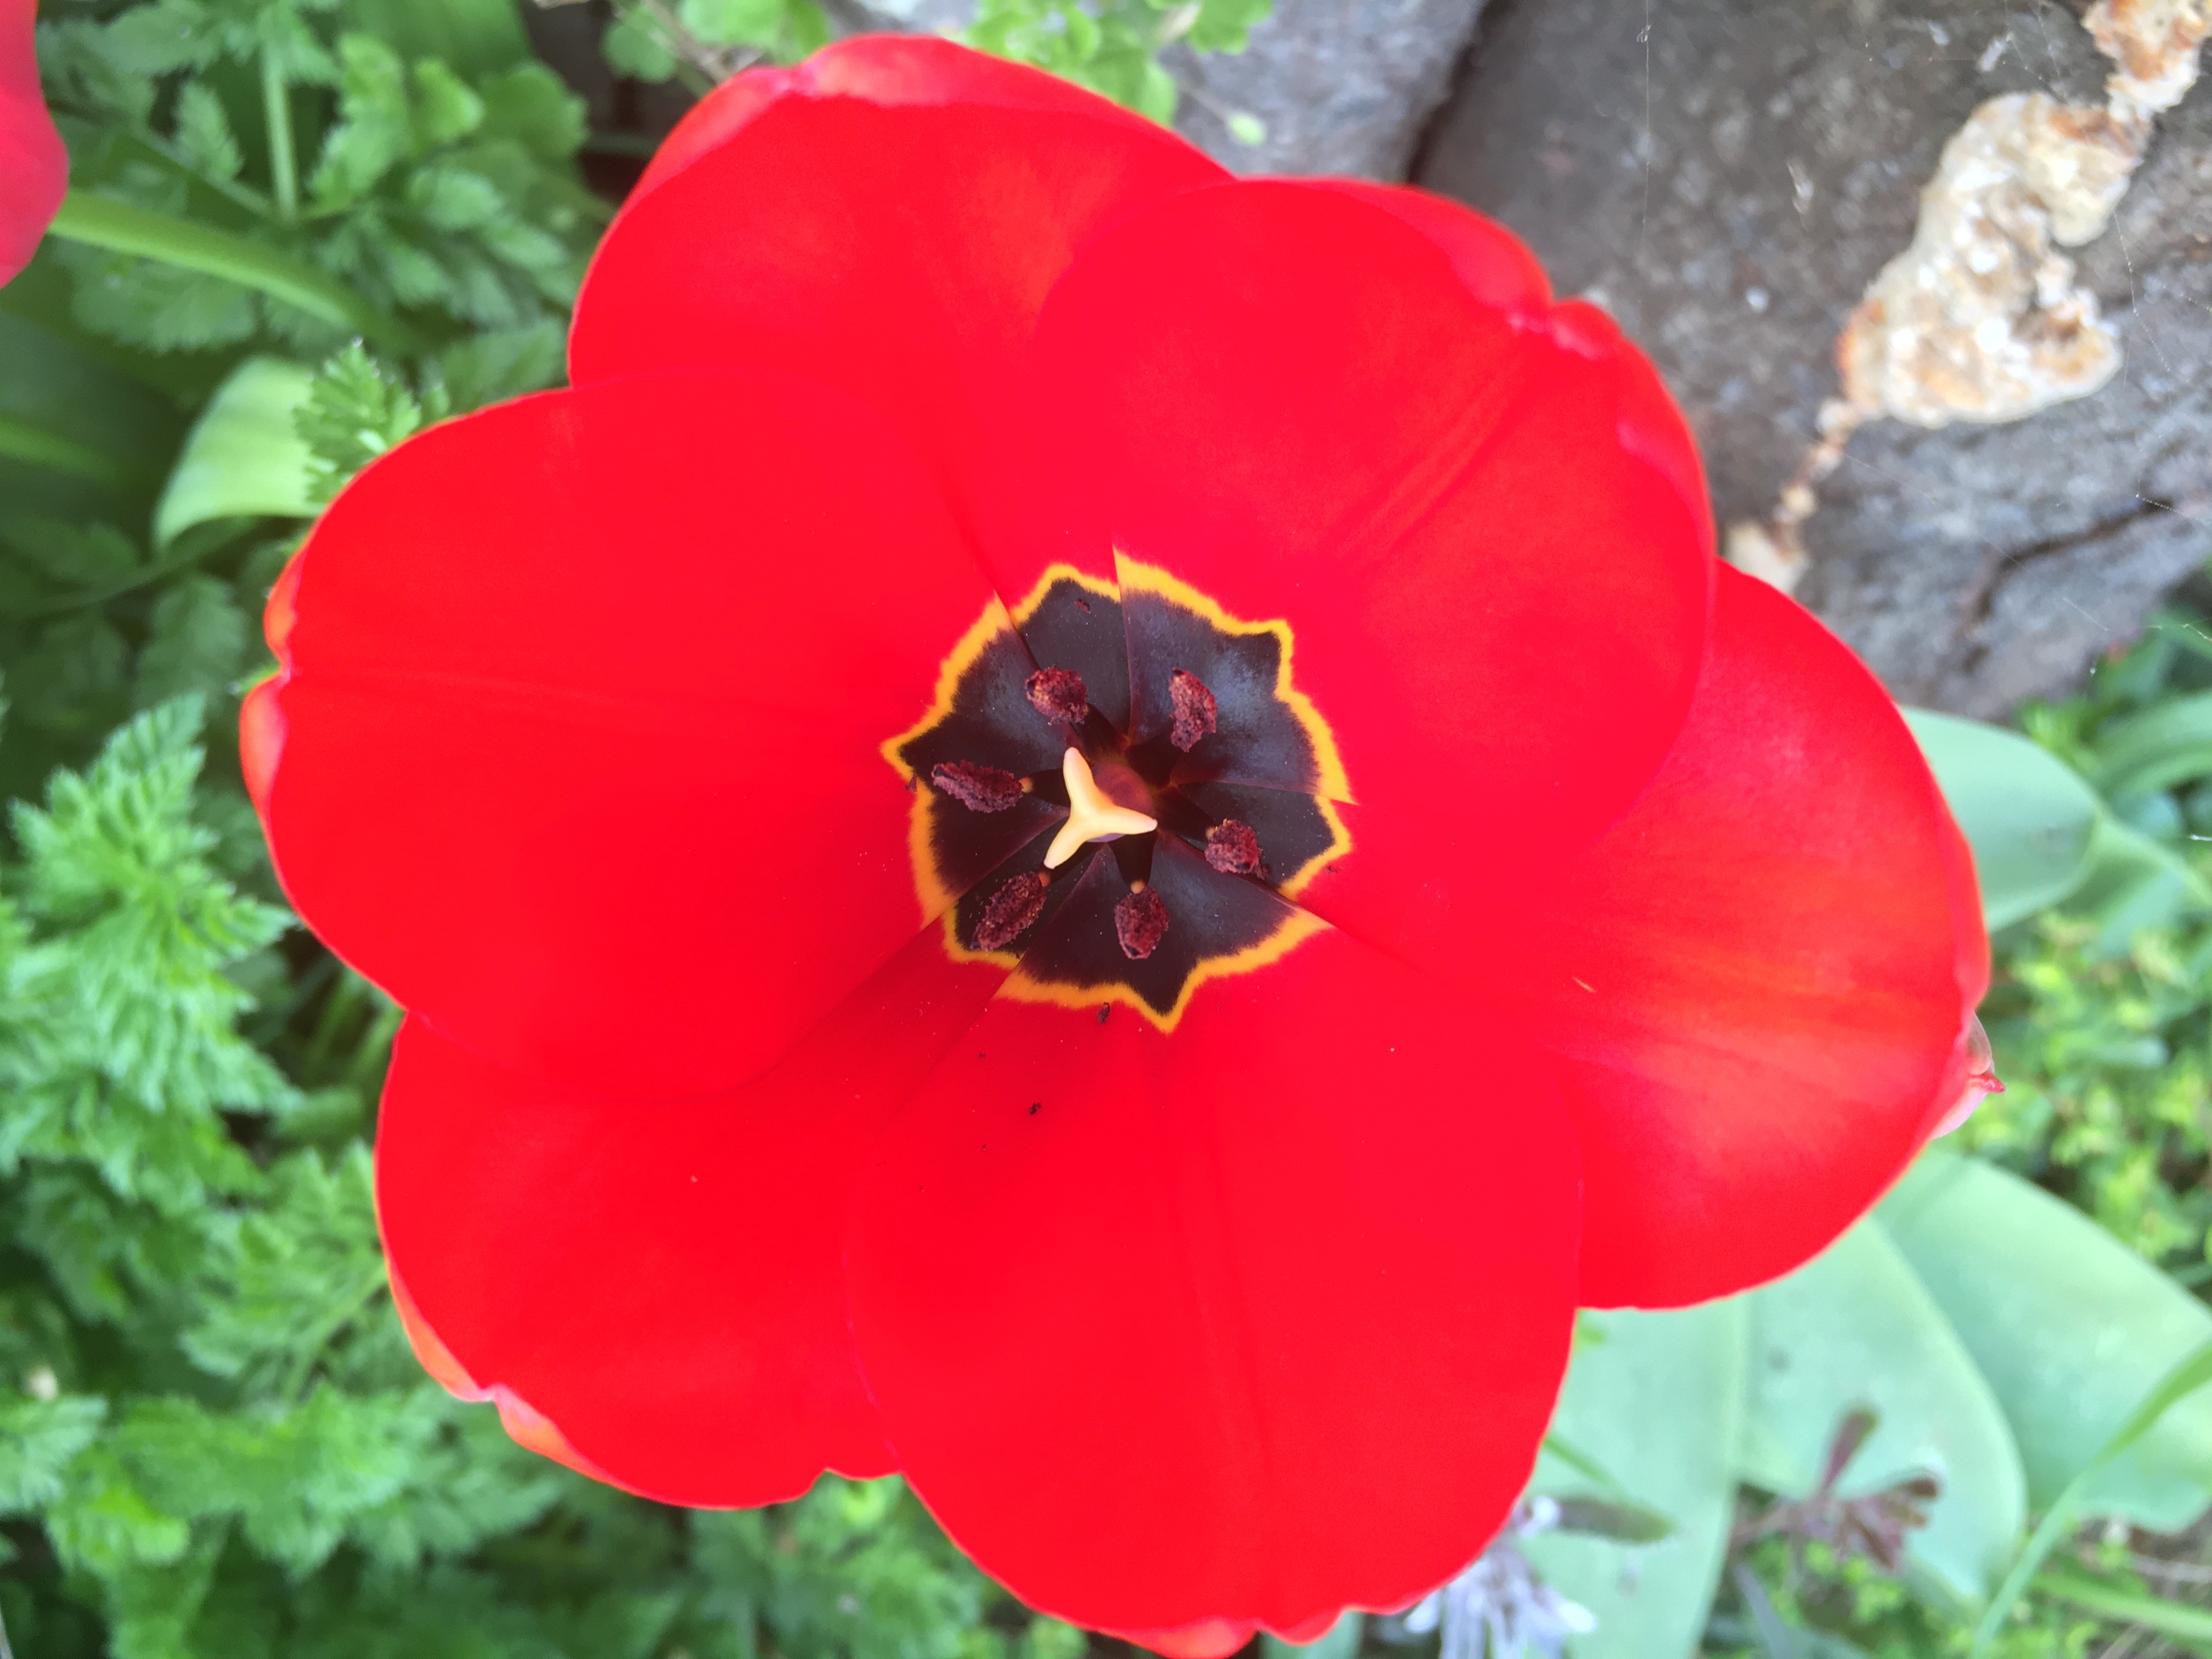 Tulipe rouge printemps 2020 langeviniere